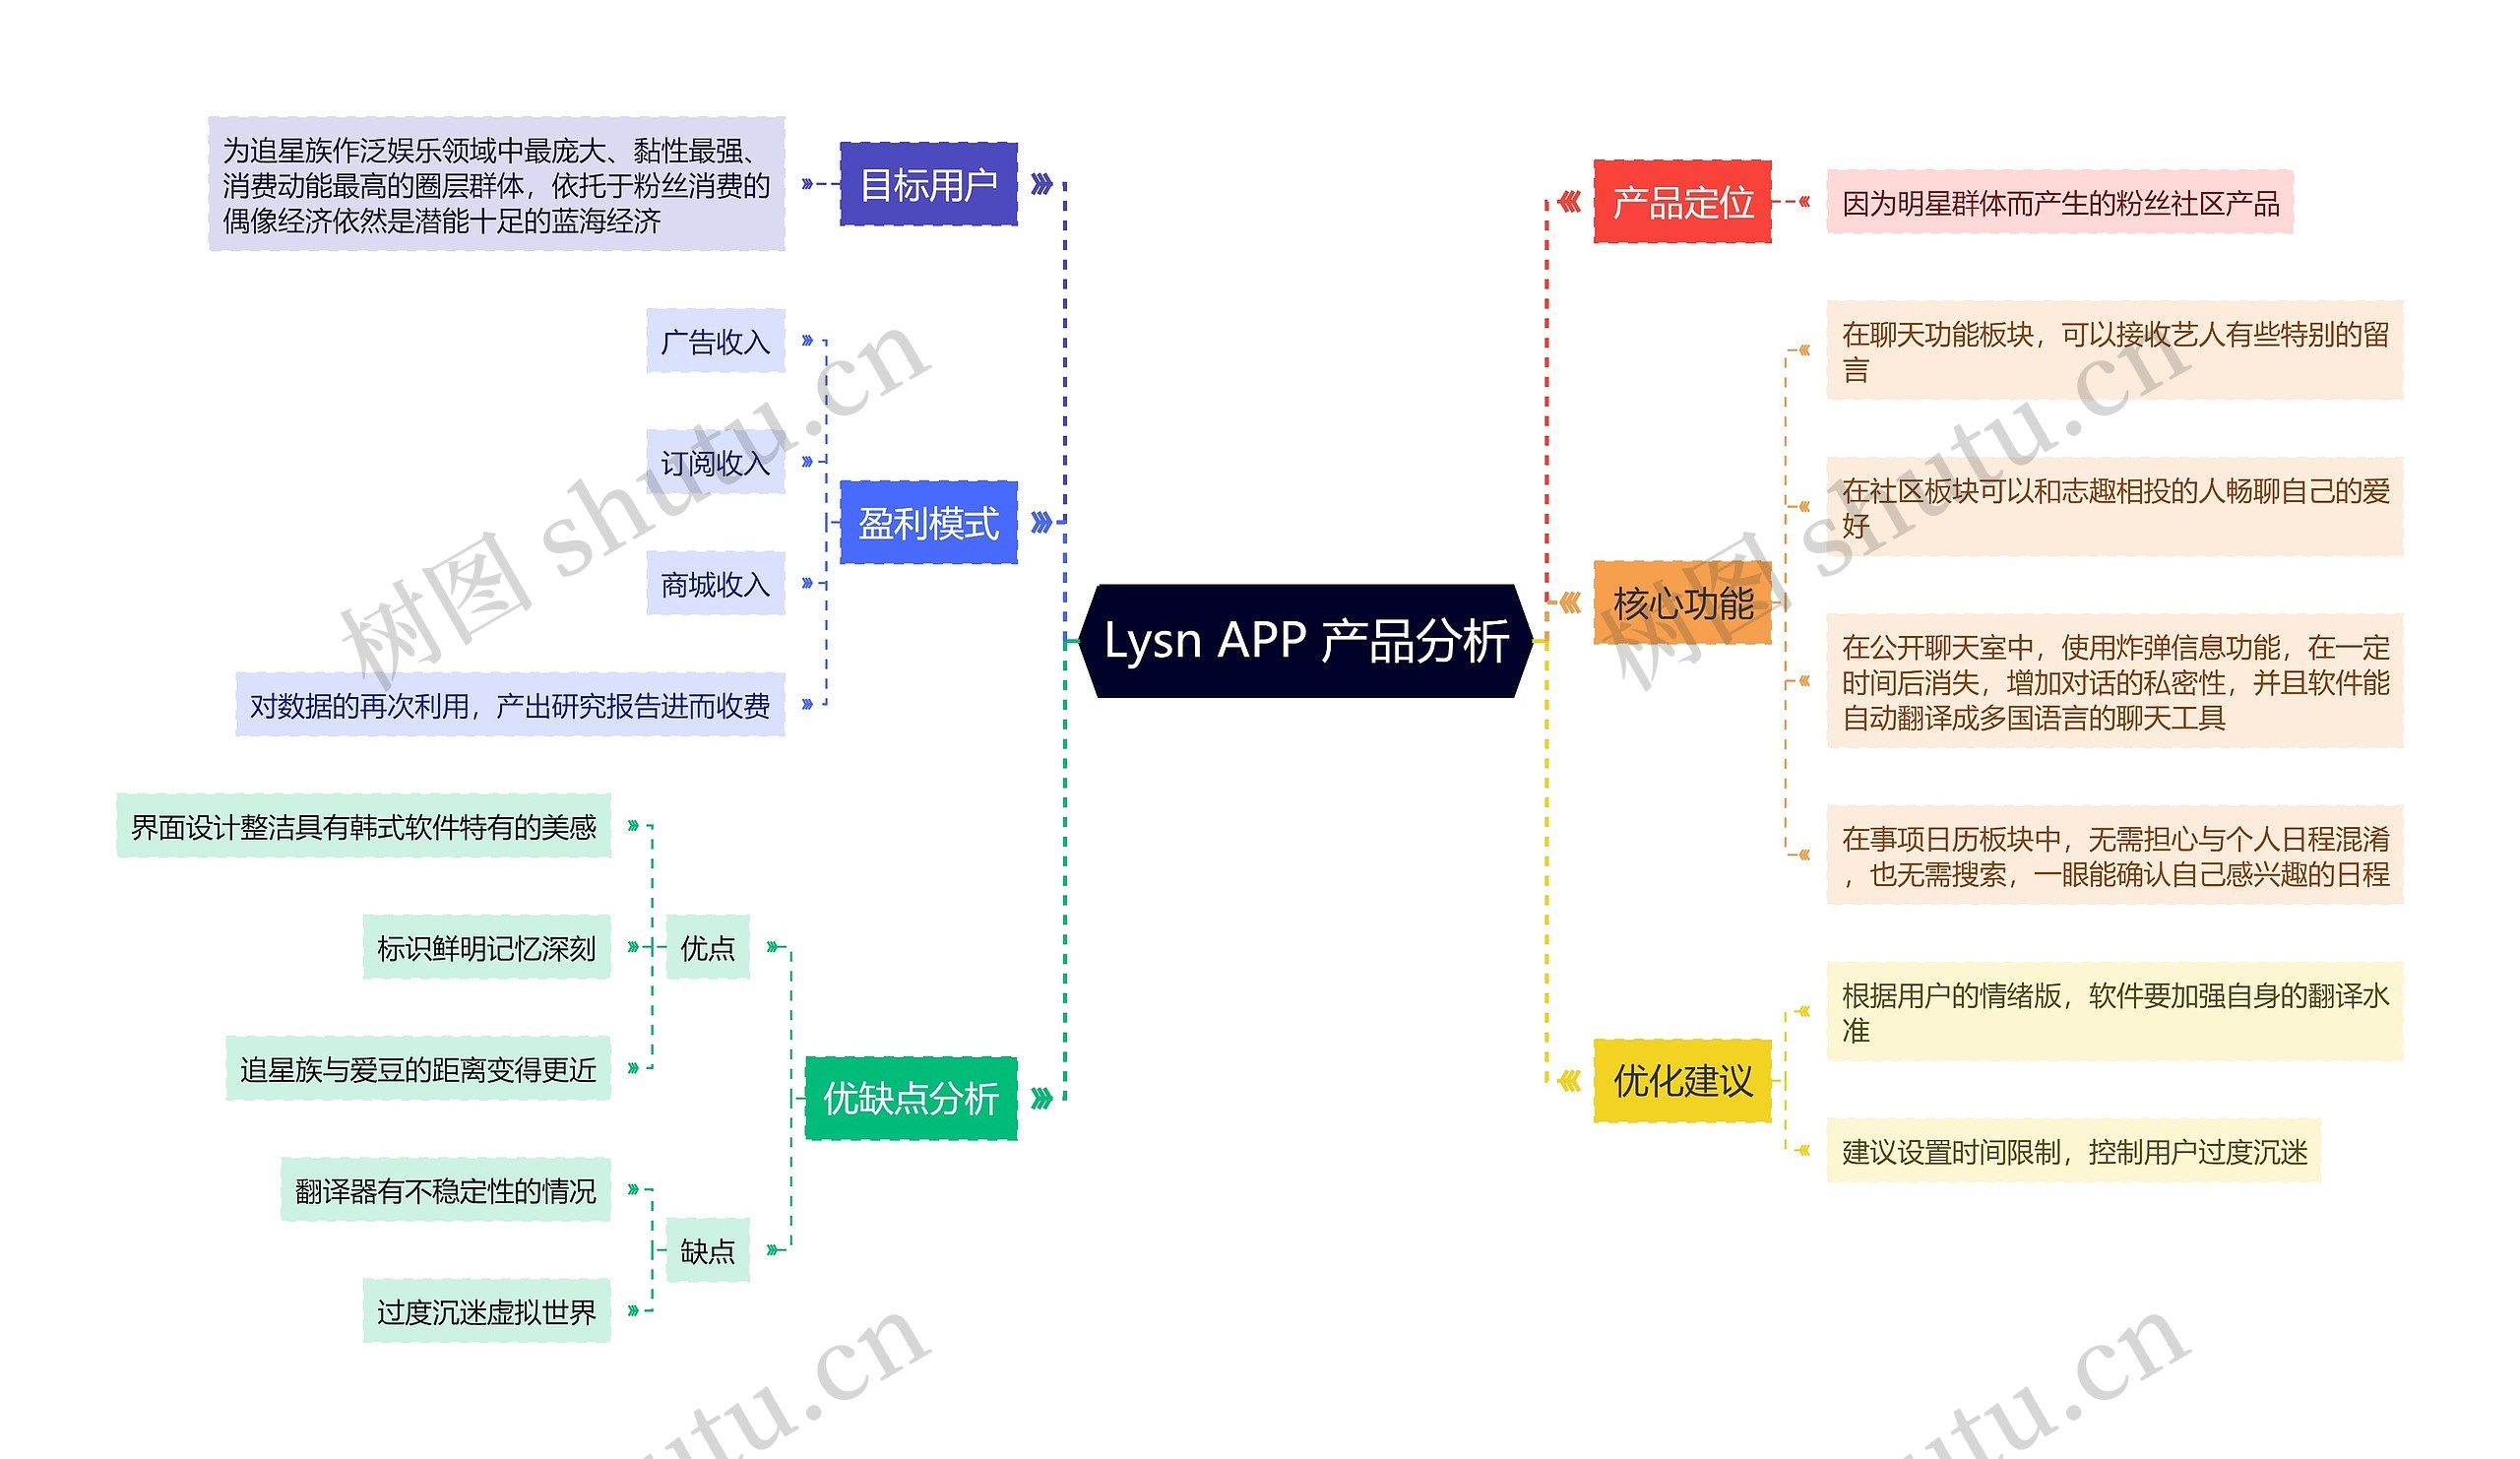 Lysn APP 产品分析思维导图